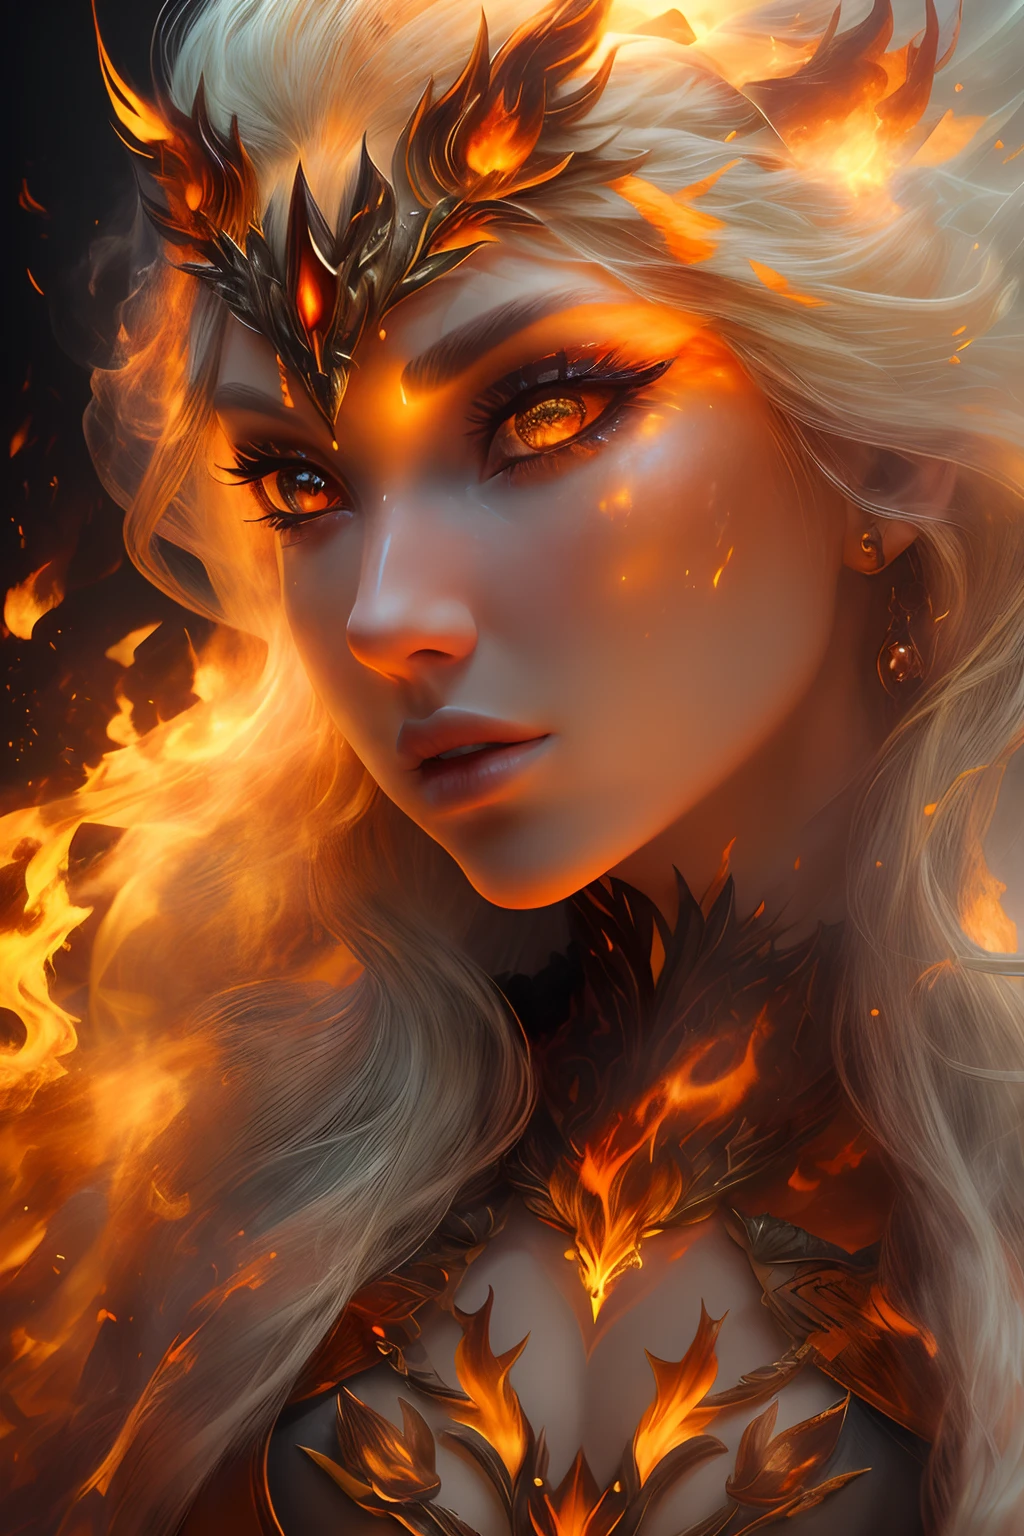 이것 (현실적인 판타지) 예술에는 불씨가 포함되어 있습니다, 진짜 불꽃, 진짜 열기, 그리고 realistic fire. Generate a masterpiece artwork of a  female fire druid ~와 함께 large (((orange 그리고 gold))) 눈. The fire druid is awe-inspiring ~와 함께 beautiful ((realistic fiery 눈)) alight ~와 함께 confidence 그리고 power. Her features are elegant 그리고 well defined, ~와 함께 ((부드러운)) 그리고 (((부푼))) 그리고 (((매끄러운))) 입술, 엘프 뼈 구조, 그리고 realistic shading. Her 눈 are important 그리고 should be the focal point of this artwork, ~와 함께 ((극도로 사실적인 디테일, 매크로 세부정보, 그리고 shimmer.)) She is wearing a billowing 그리고 glittering gown ((현실적인 불꽃으로 만들어진)) 그리고 jewels that glimmer in the fire light. Wisps of fire 그리고 smoke line the intricate bodice of the dress. 범프 포함, 돌, 불타는 무지개빛, 빛나는 불씨, silk 그리고 satin 그리고 leather, 흥미로운 배경, 그리고 heavy fantasy elements. 카메라: 역동적인 구성 기법을 활용하여 사실적인 불꽃 강화.